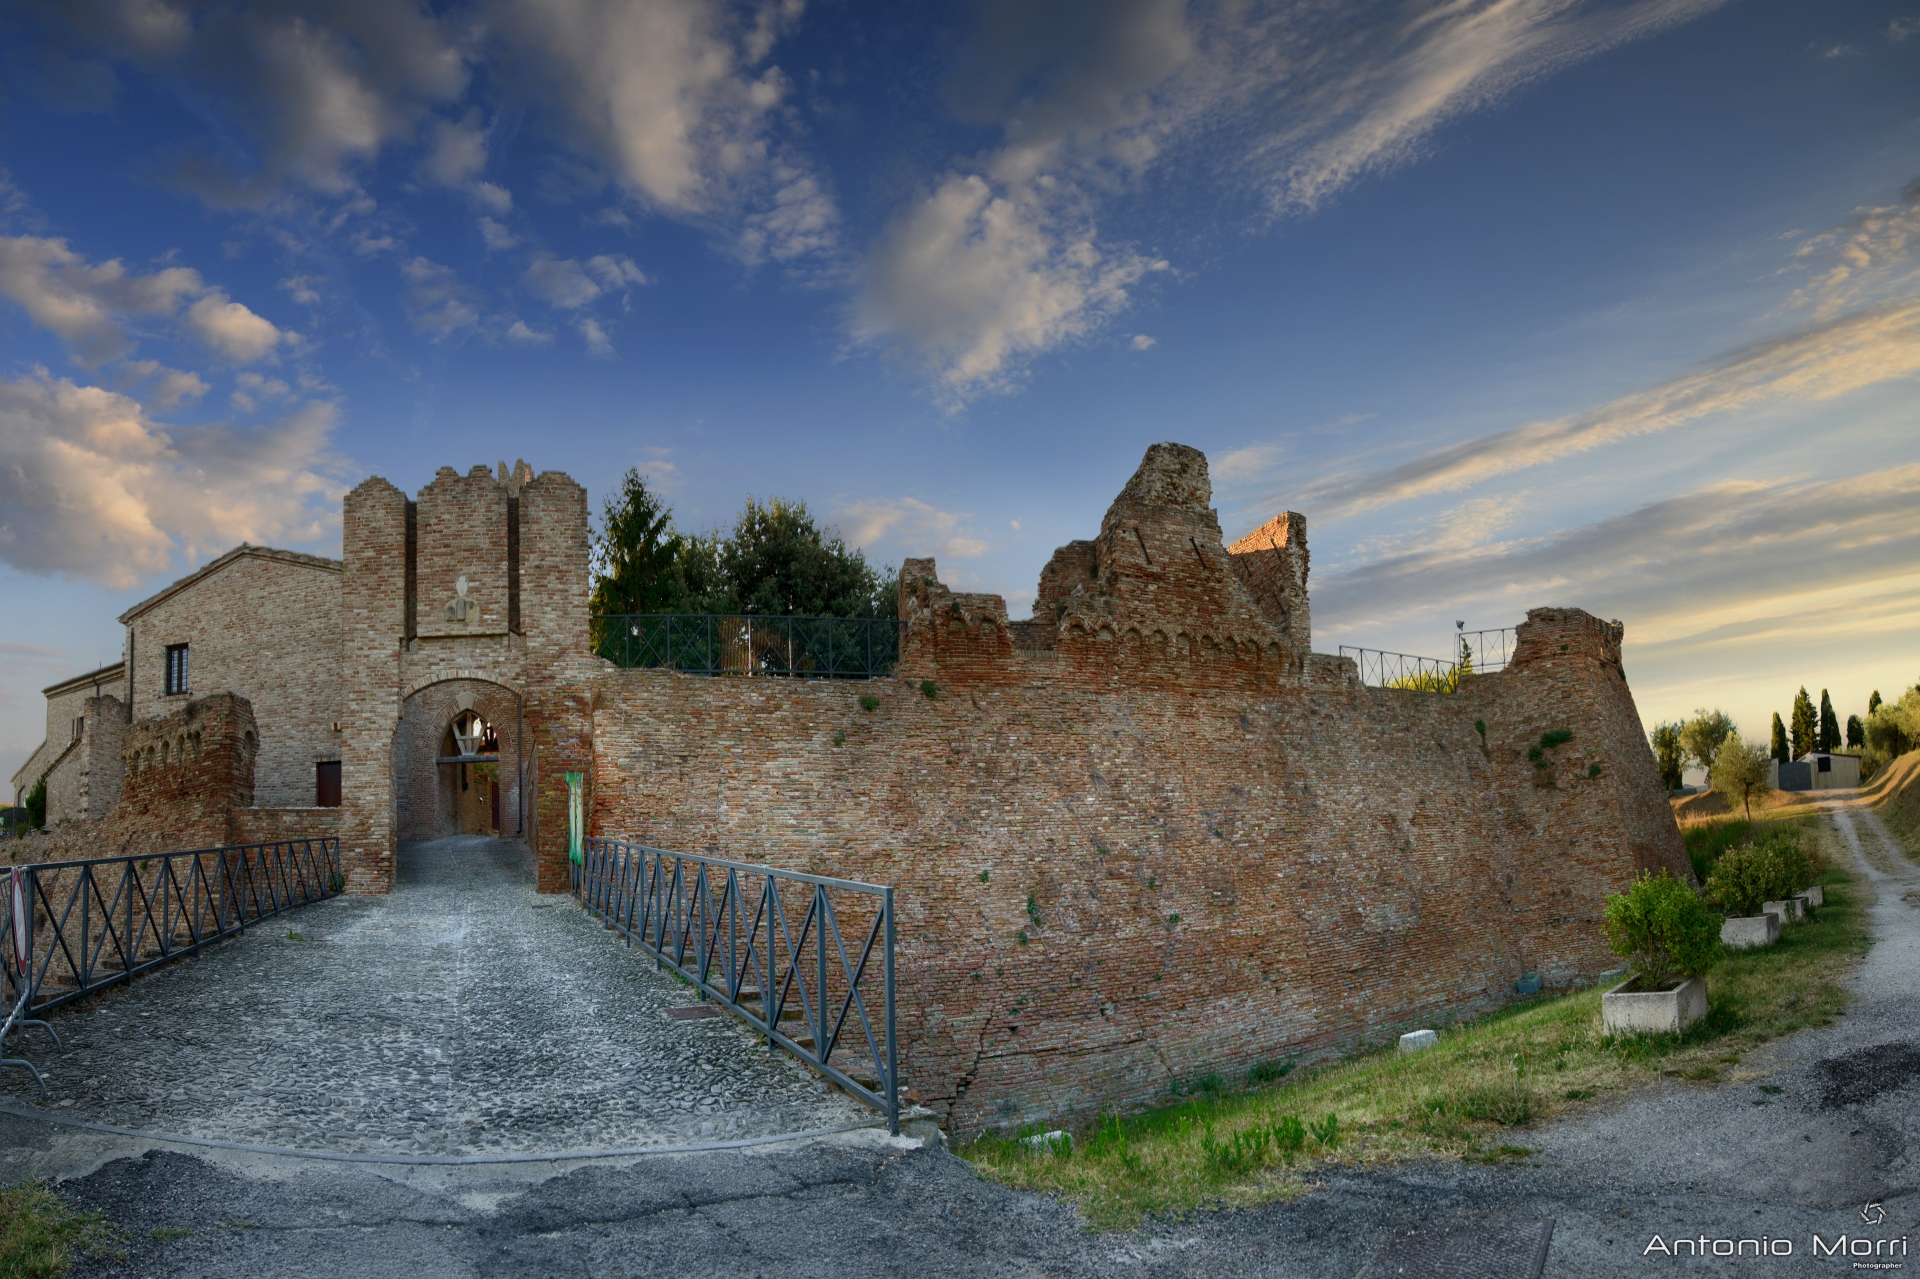 Malatesta Castle in Coriano photo by Antonio Morri